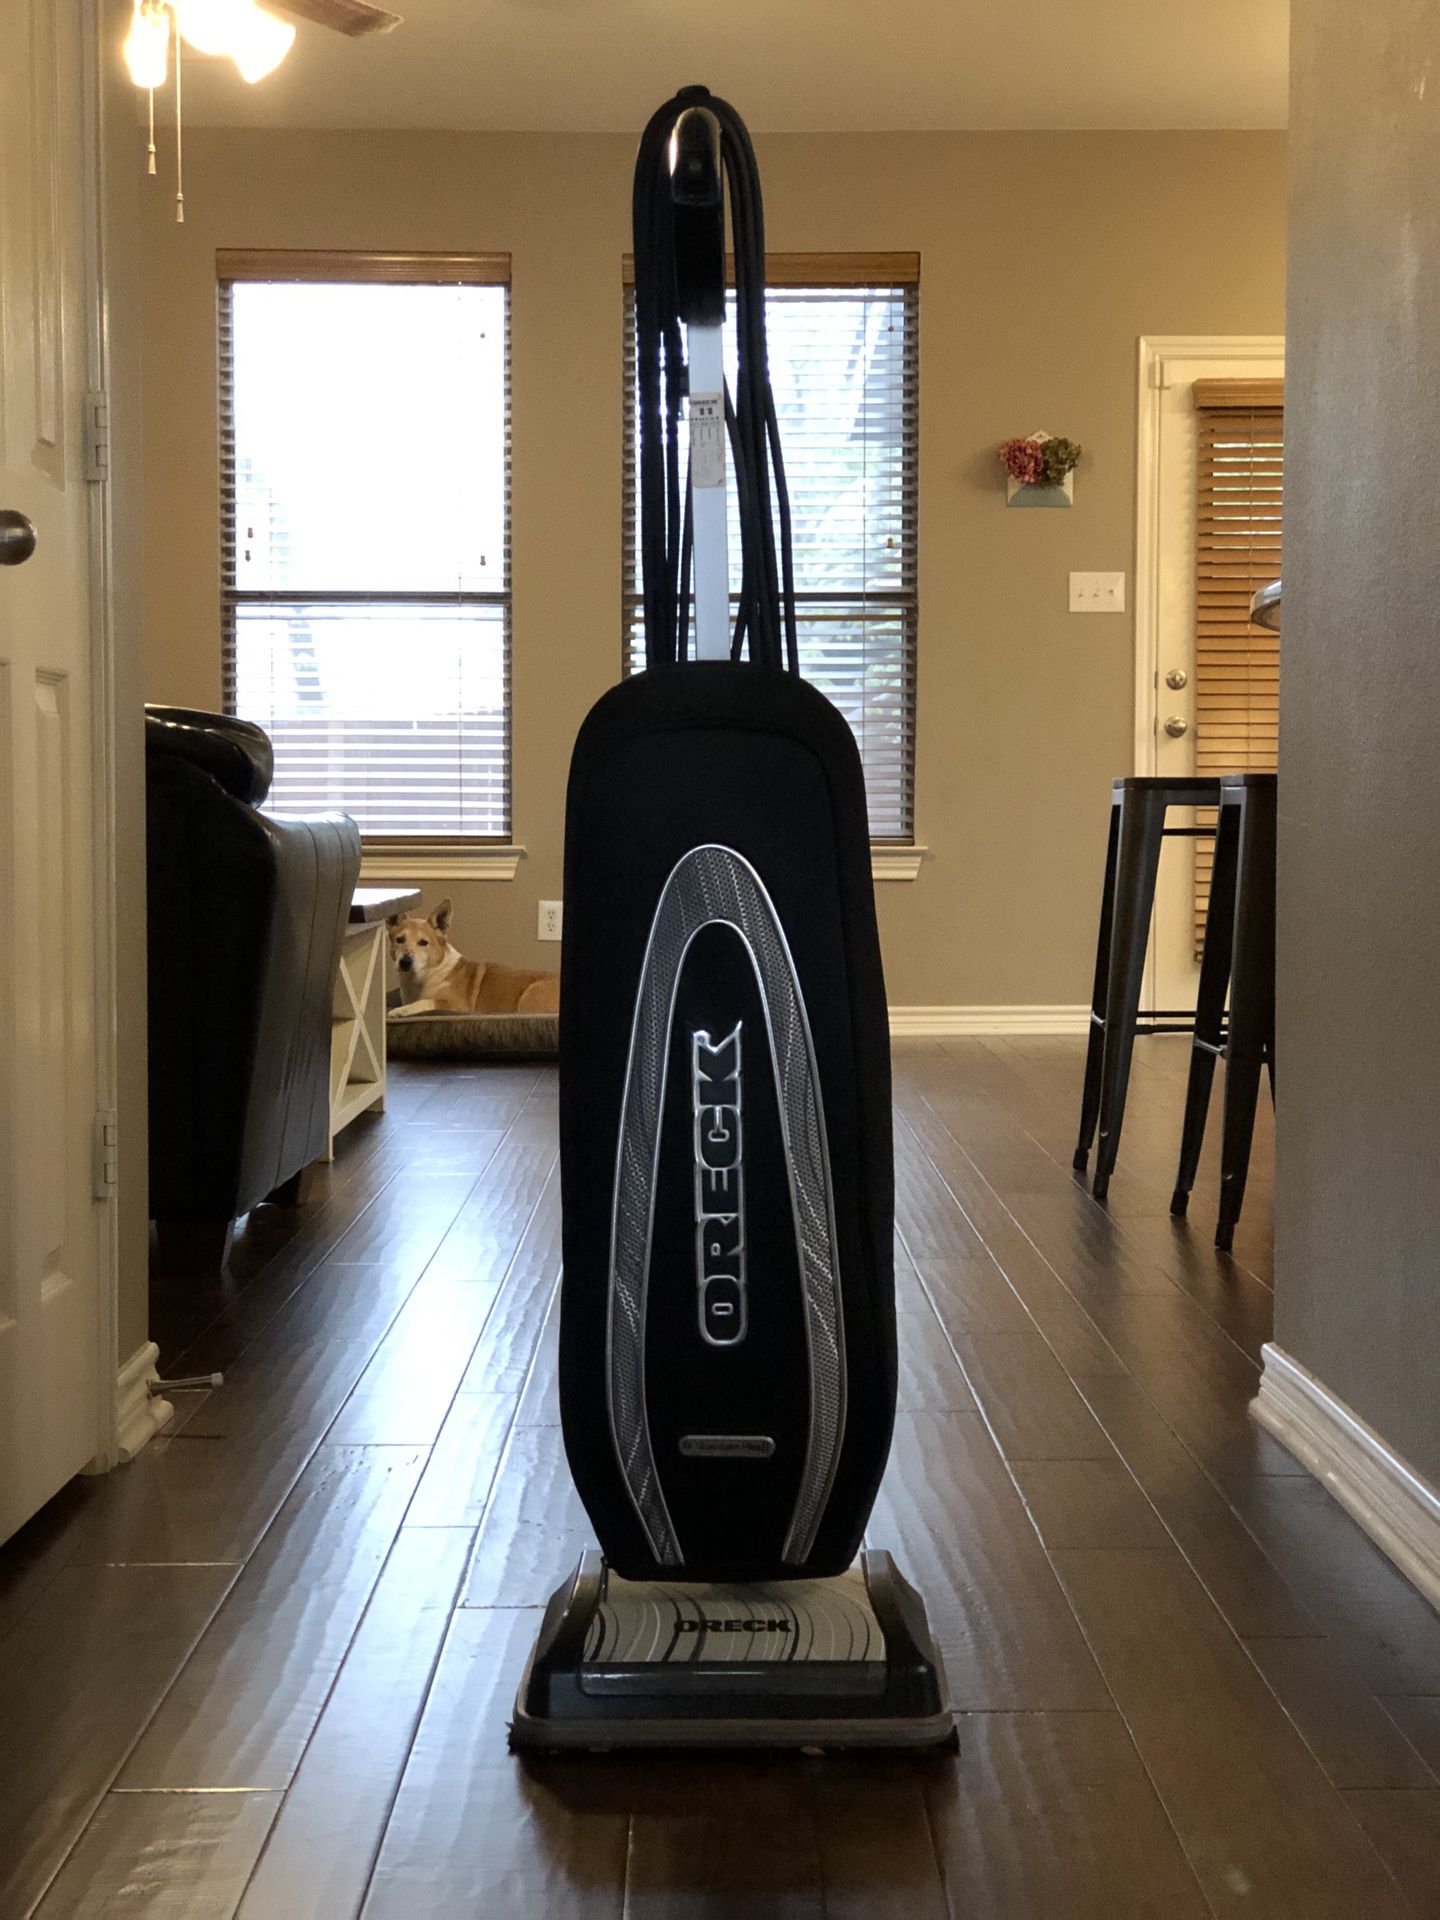 Oreck XL Signature Plus vacuum